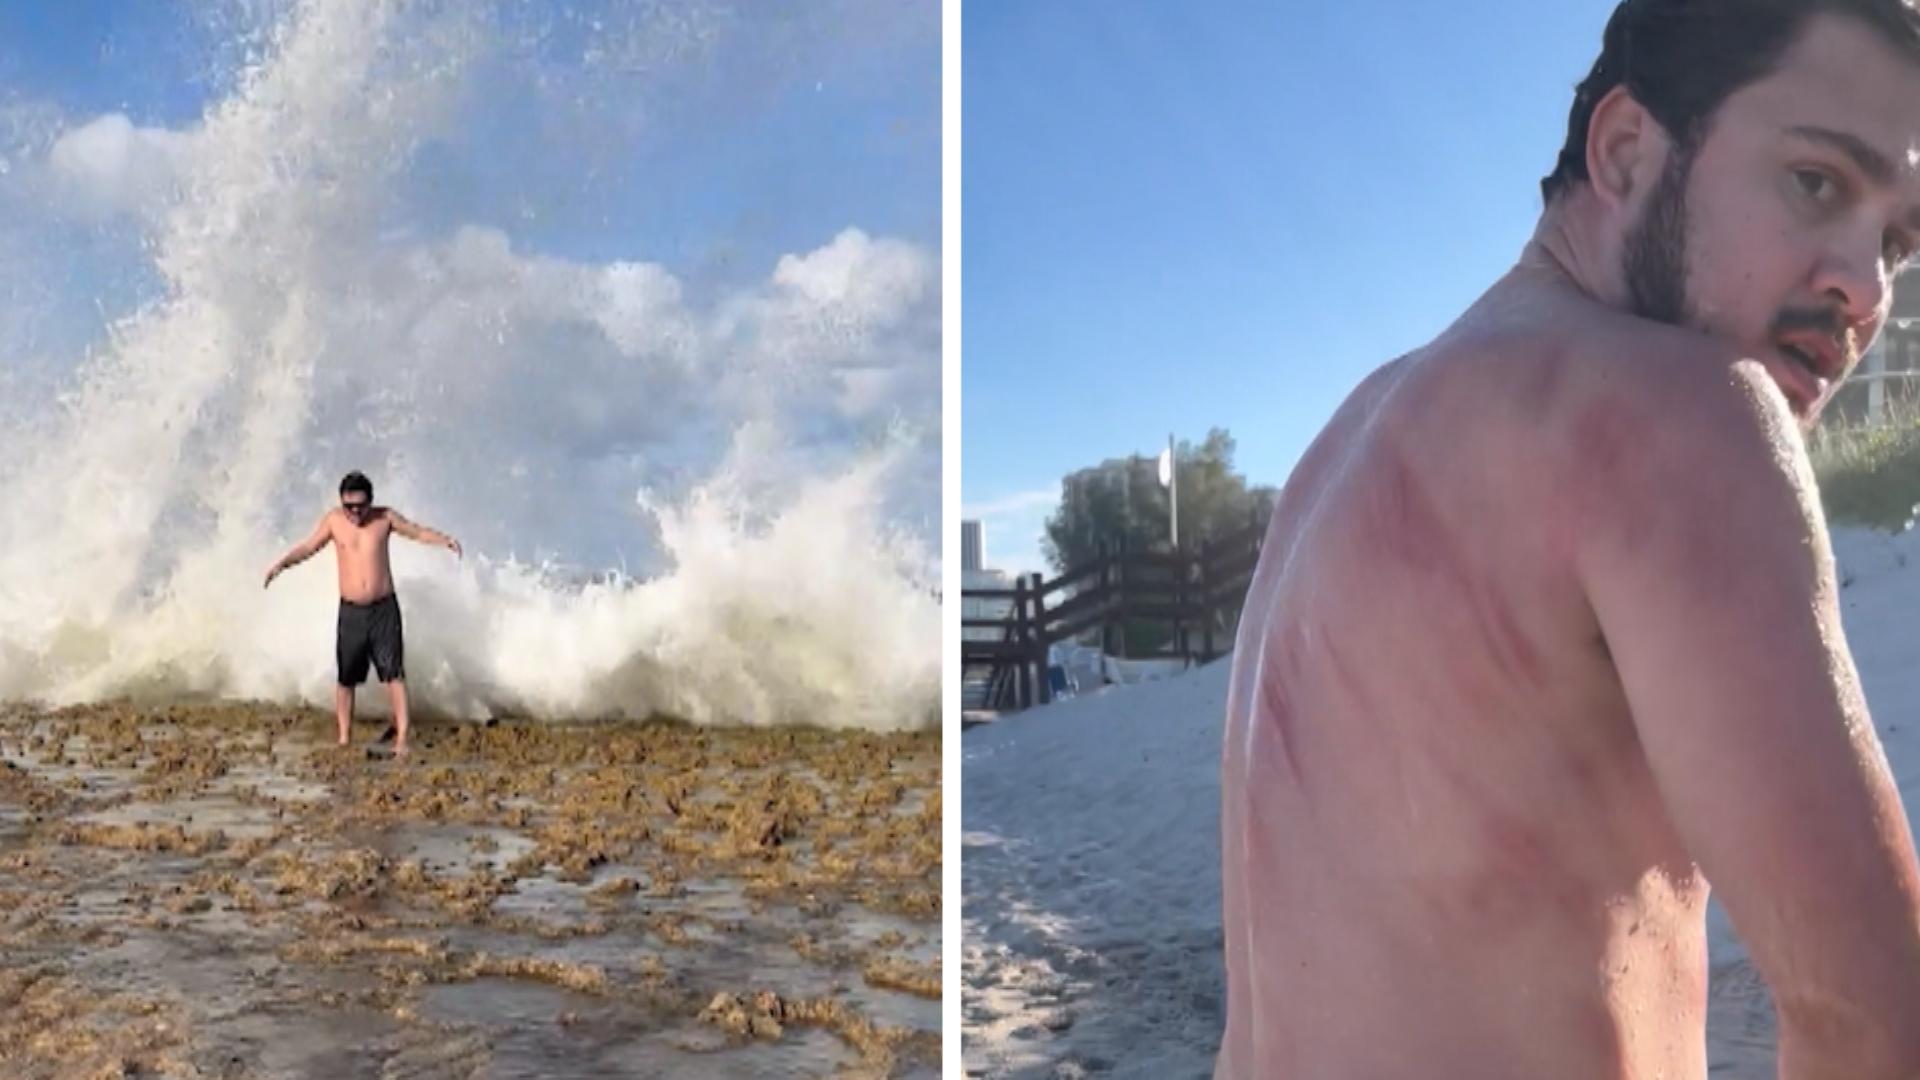 Posing endet blutig: Welle schleudert Mann auf Steine Schmerzhafte Urlaubserinnerung